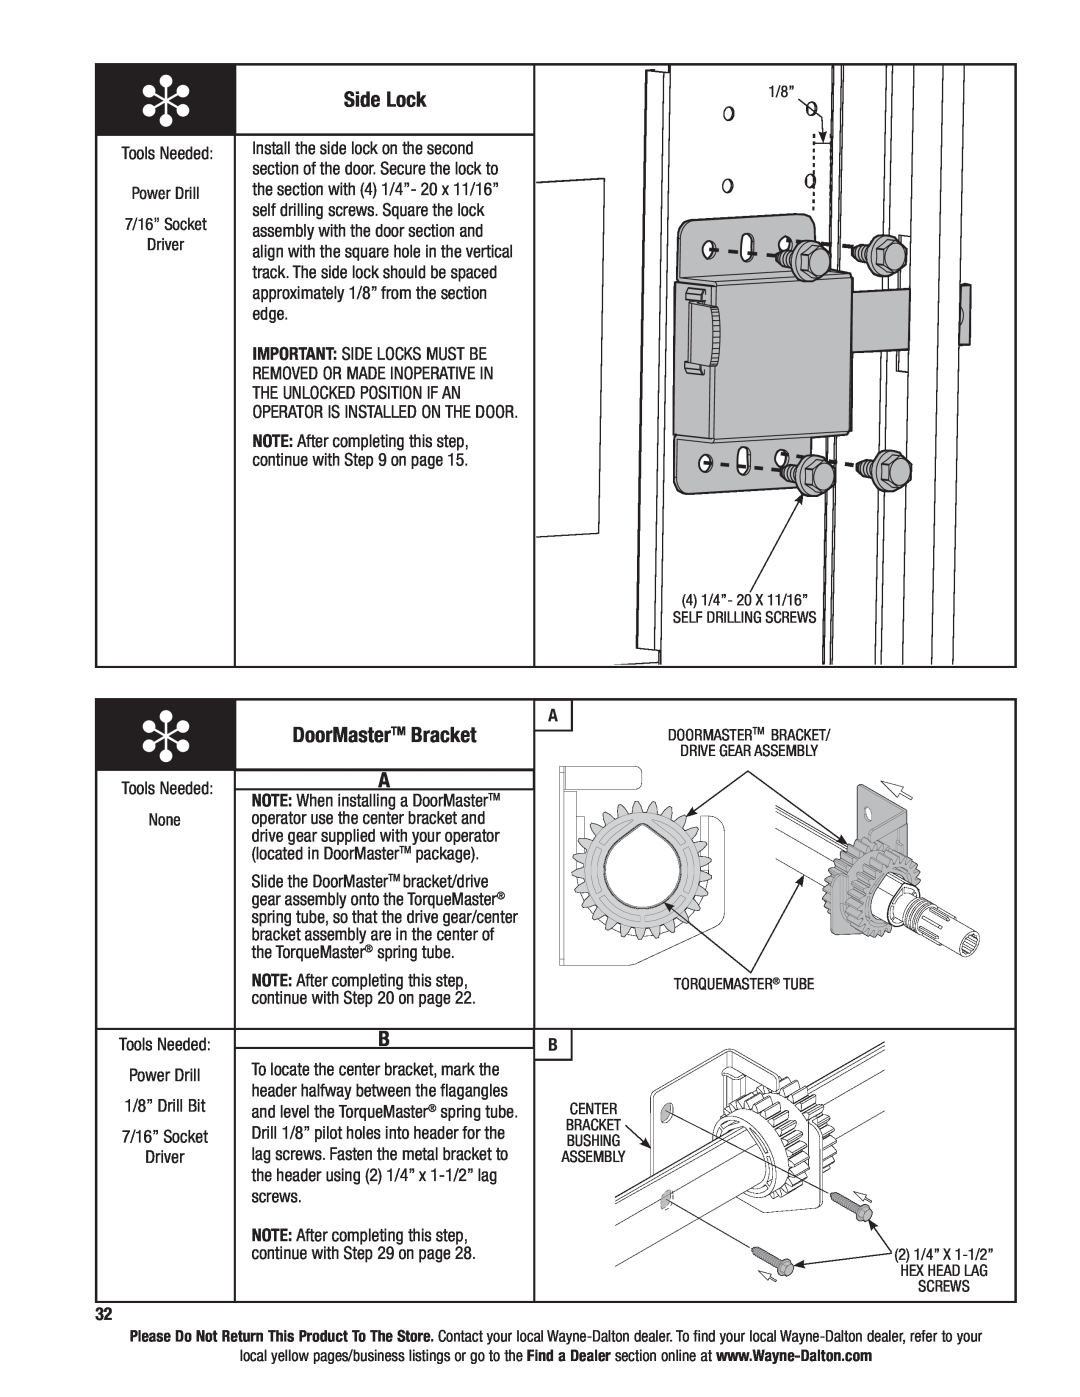 Wayne-Dalton 9600 installation instructions Side Lock, DoorMasterTM Bracket 